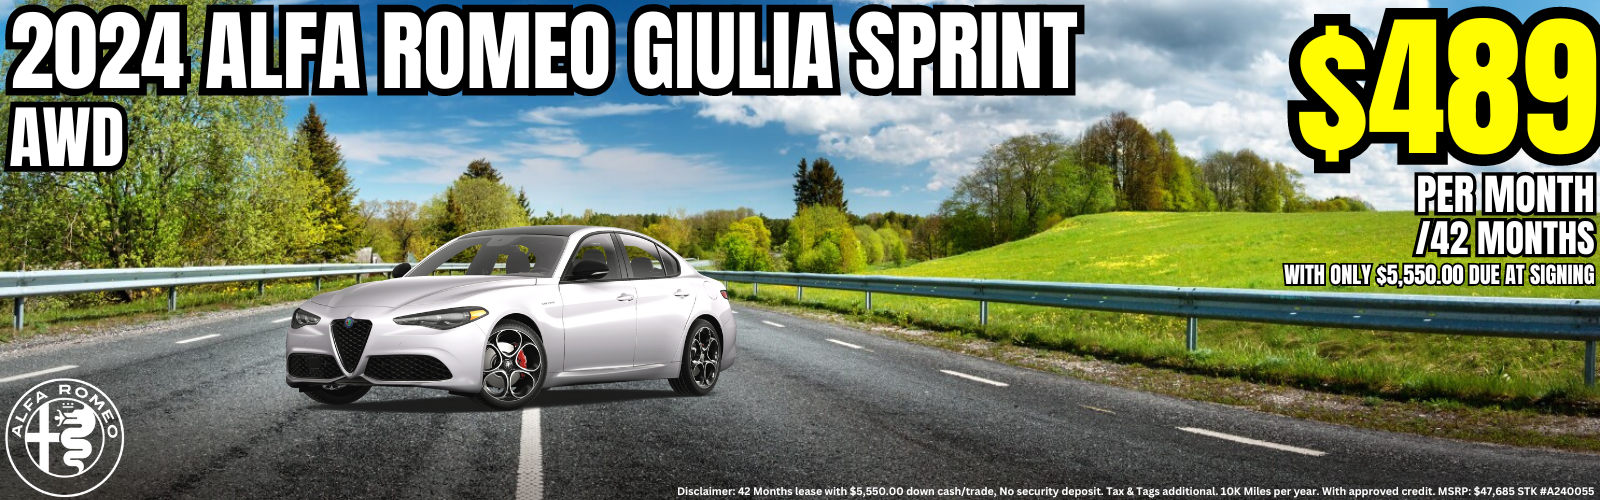 Giulia Sprint